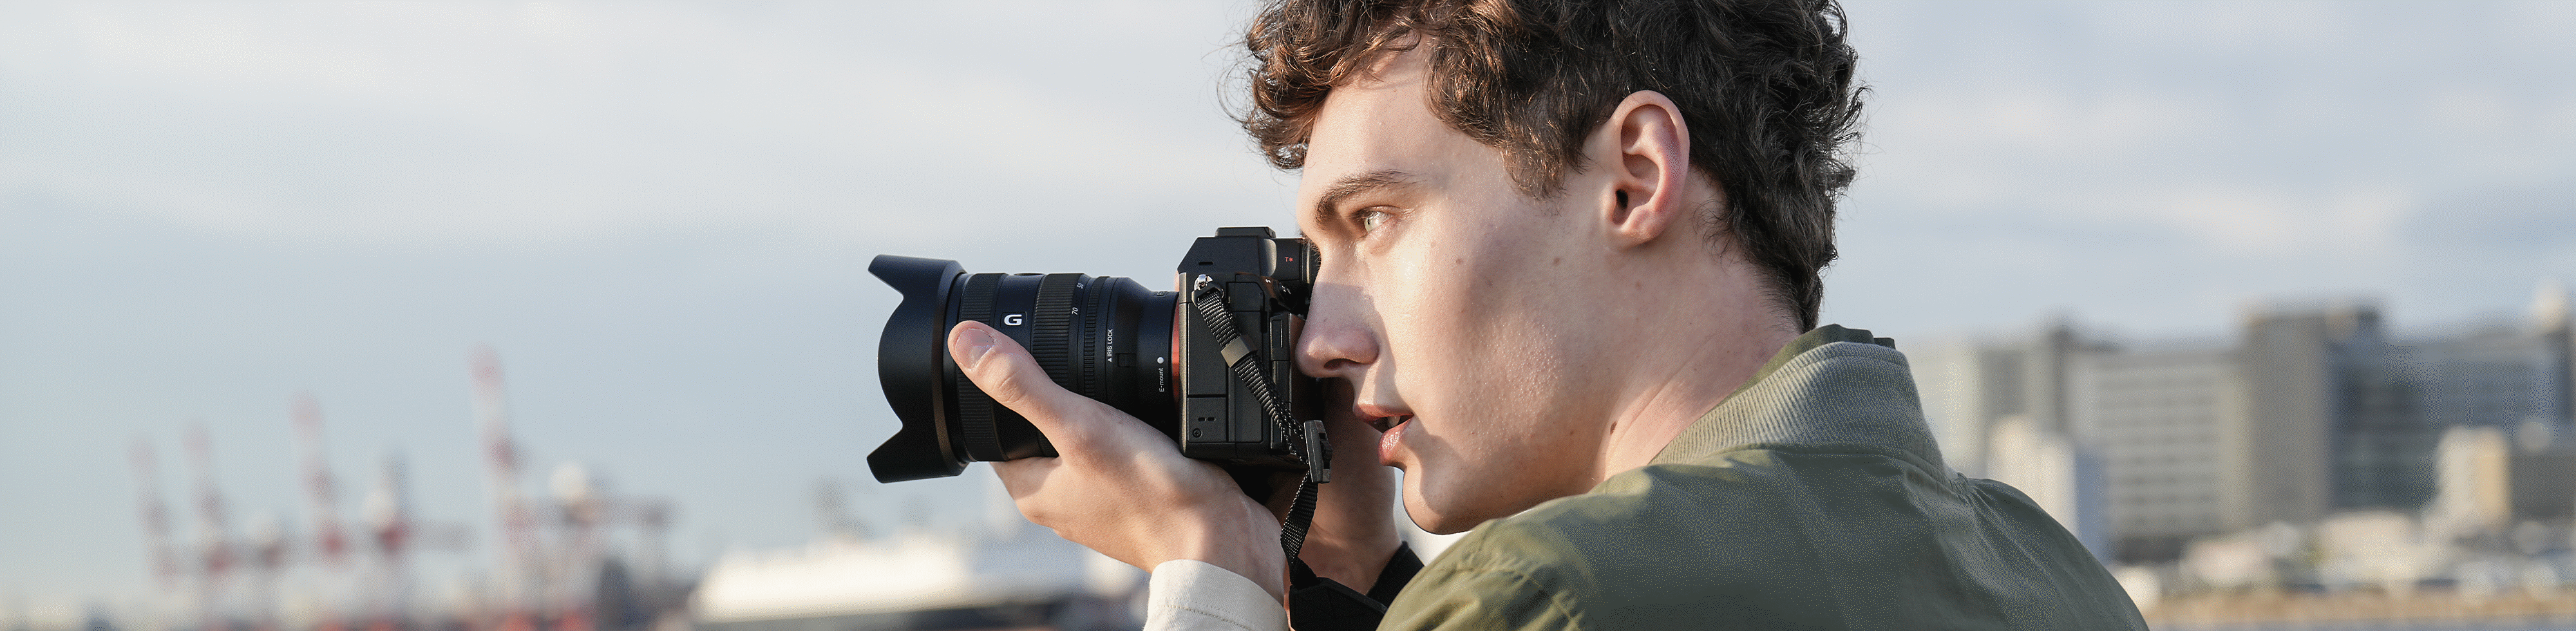 Žmogus fotografuoja pakrantėje, laikydamas fotoaparatą rankose ir naudodamas vaizdo ieškiklį